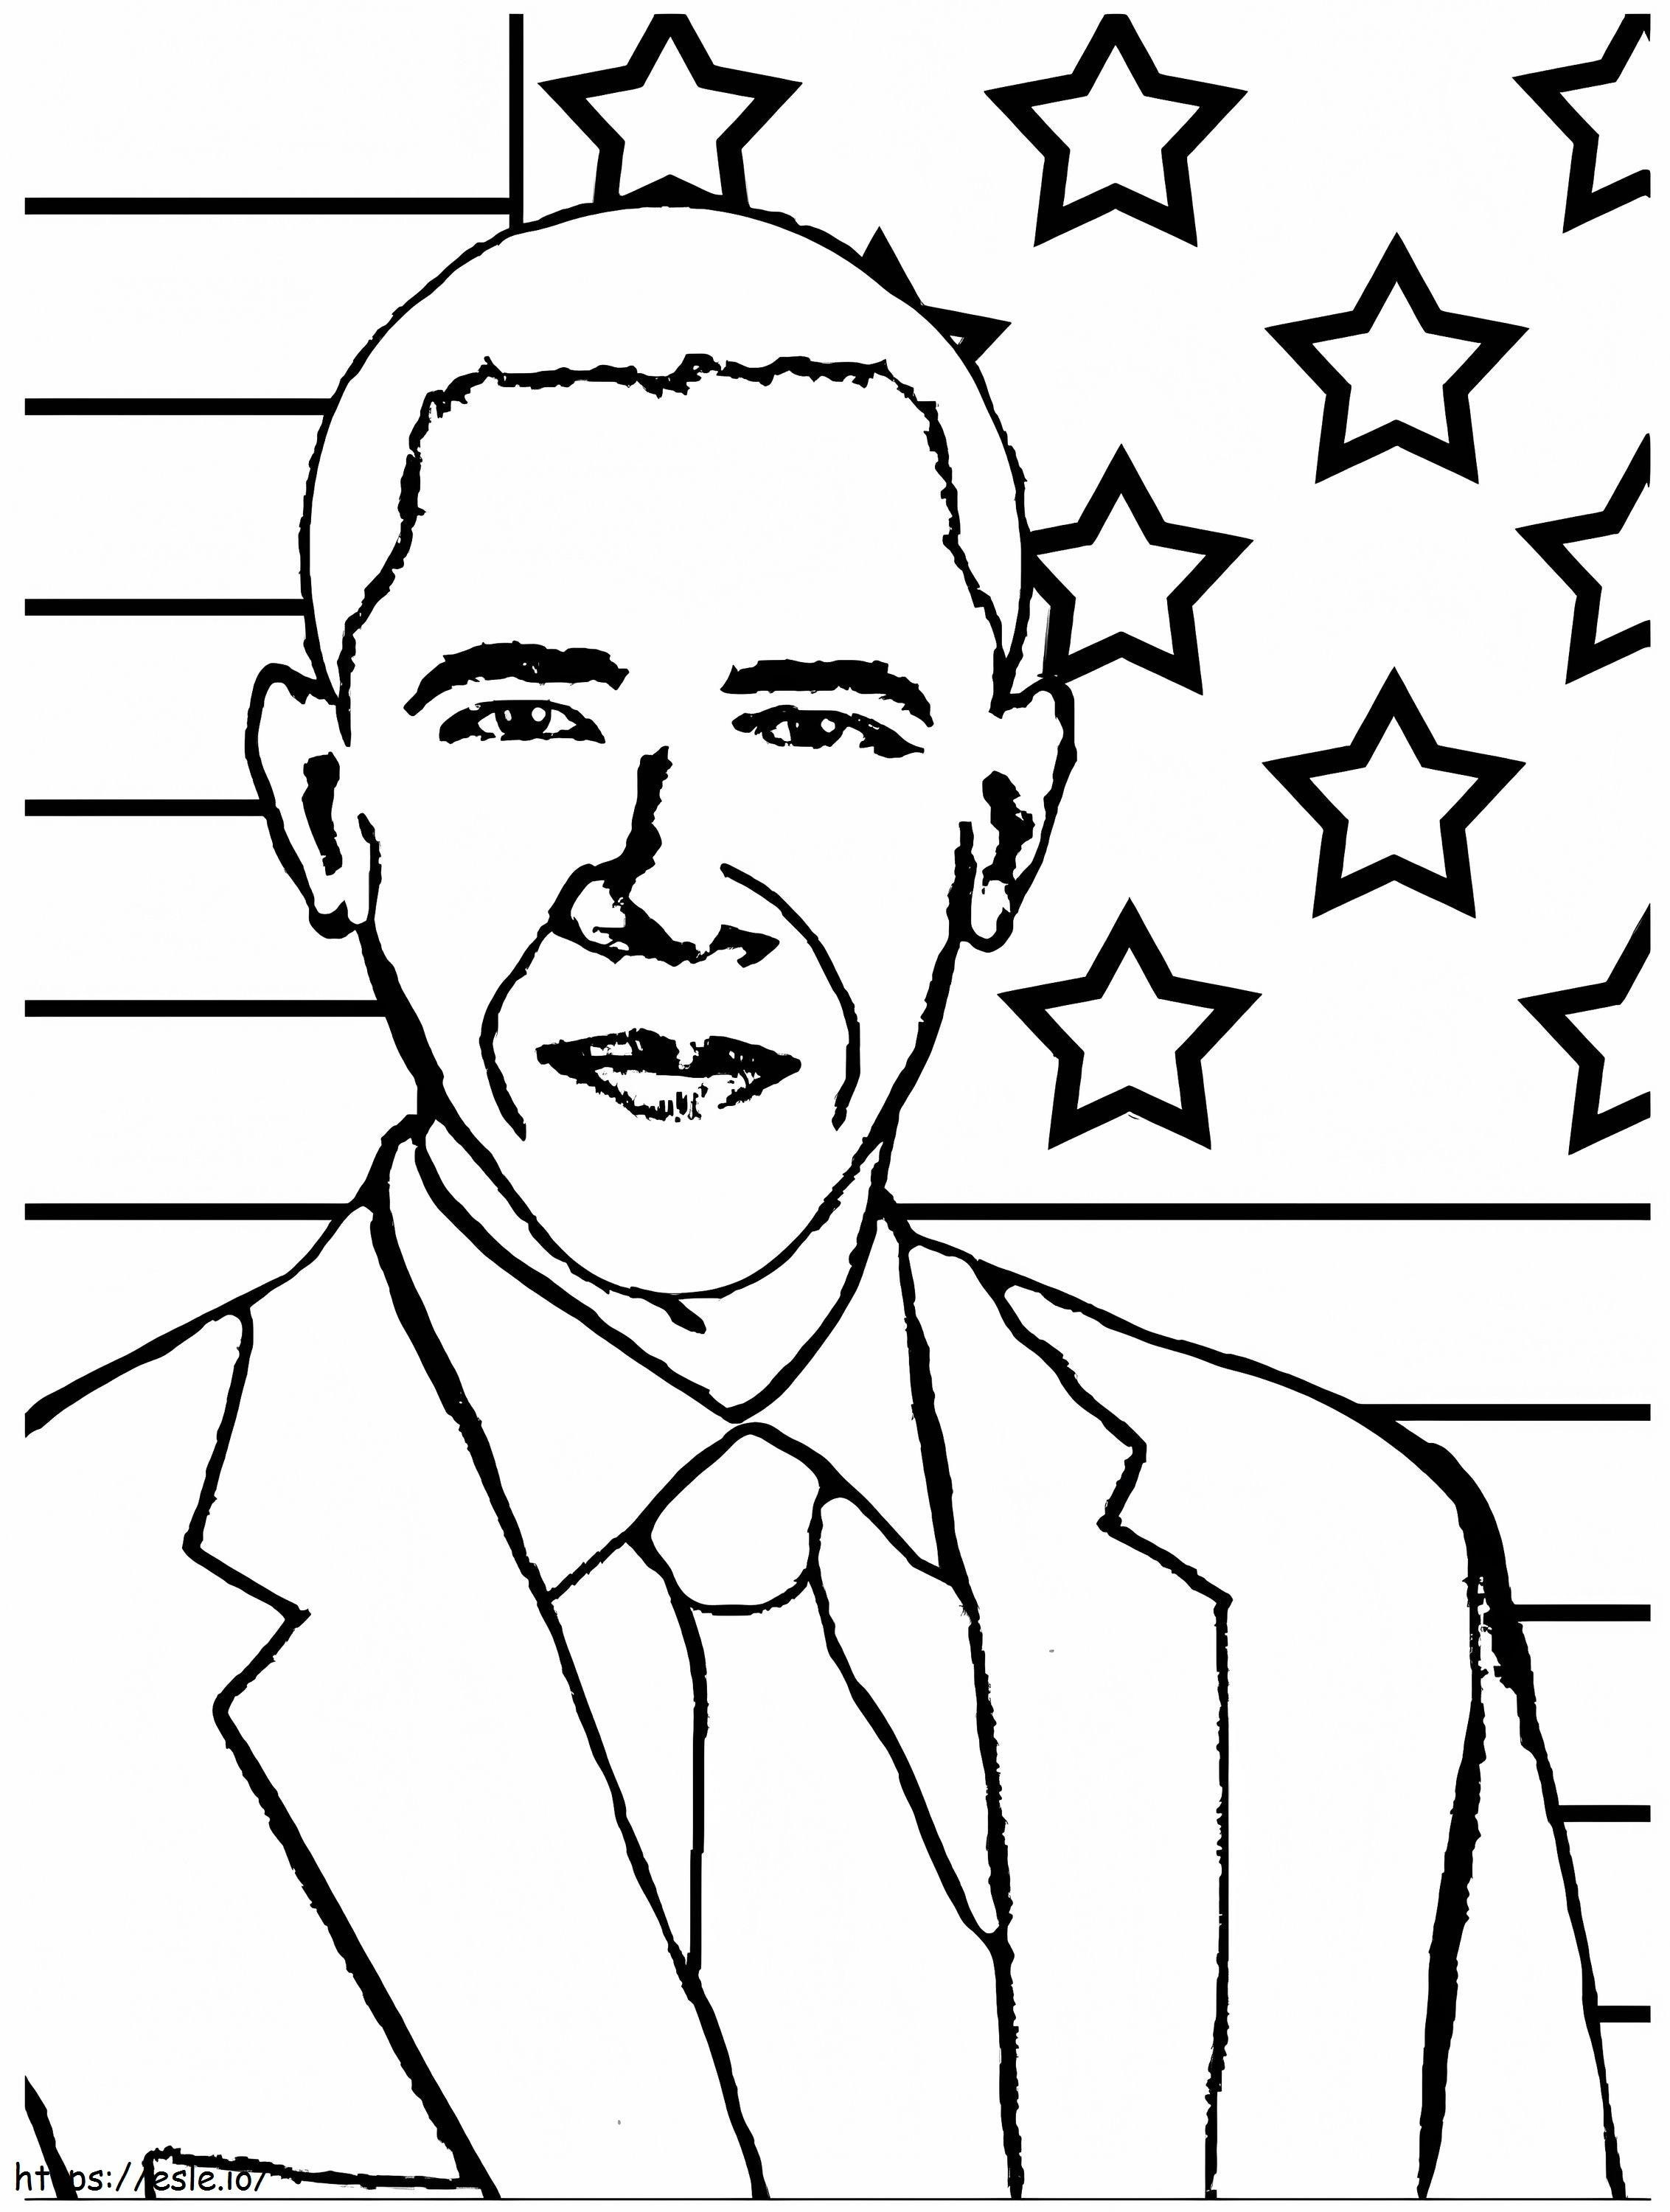 1541130883 Presiden Baru Obama Bebaskan Barack Lebih Baik Halaman 6537 Untuk Seprai Gambar Mewarnai